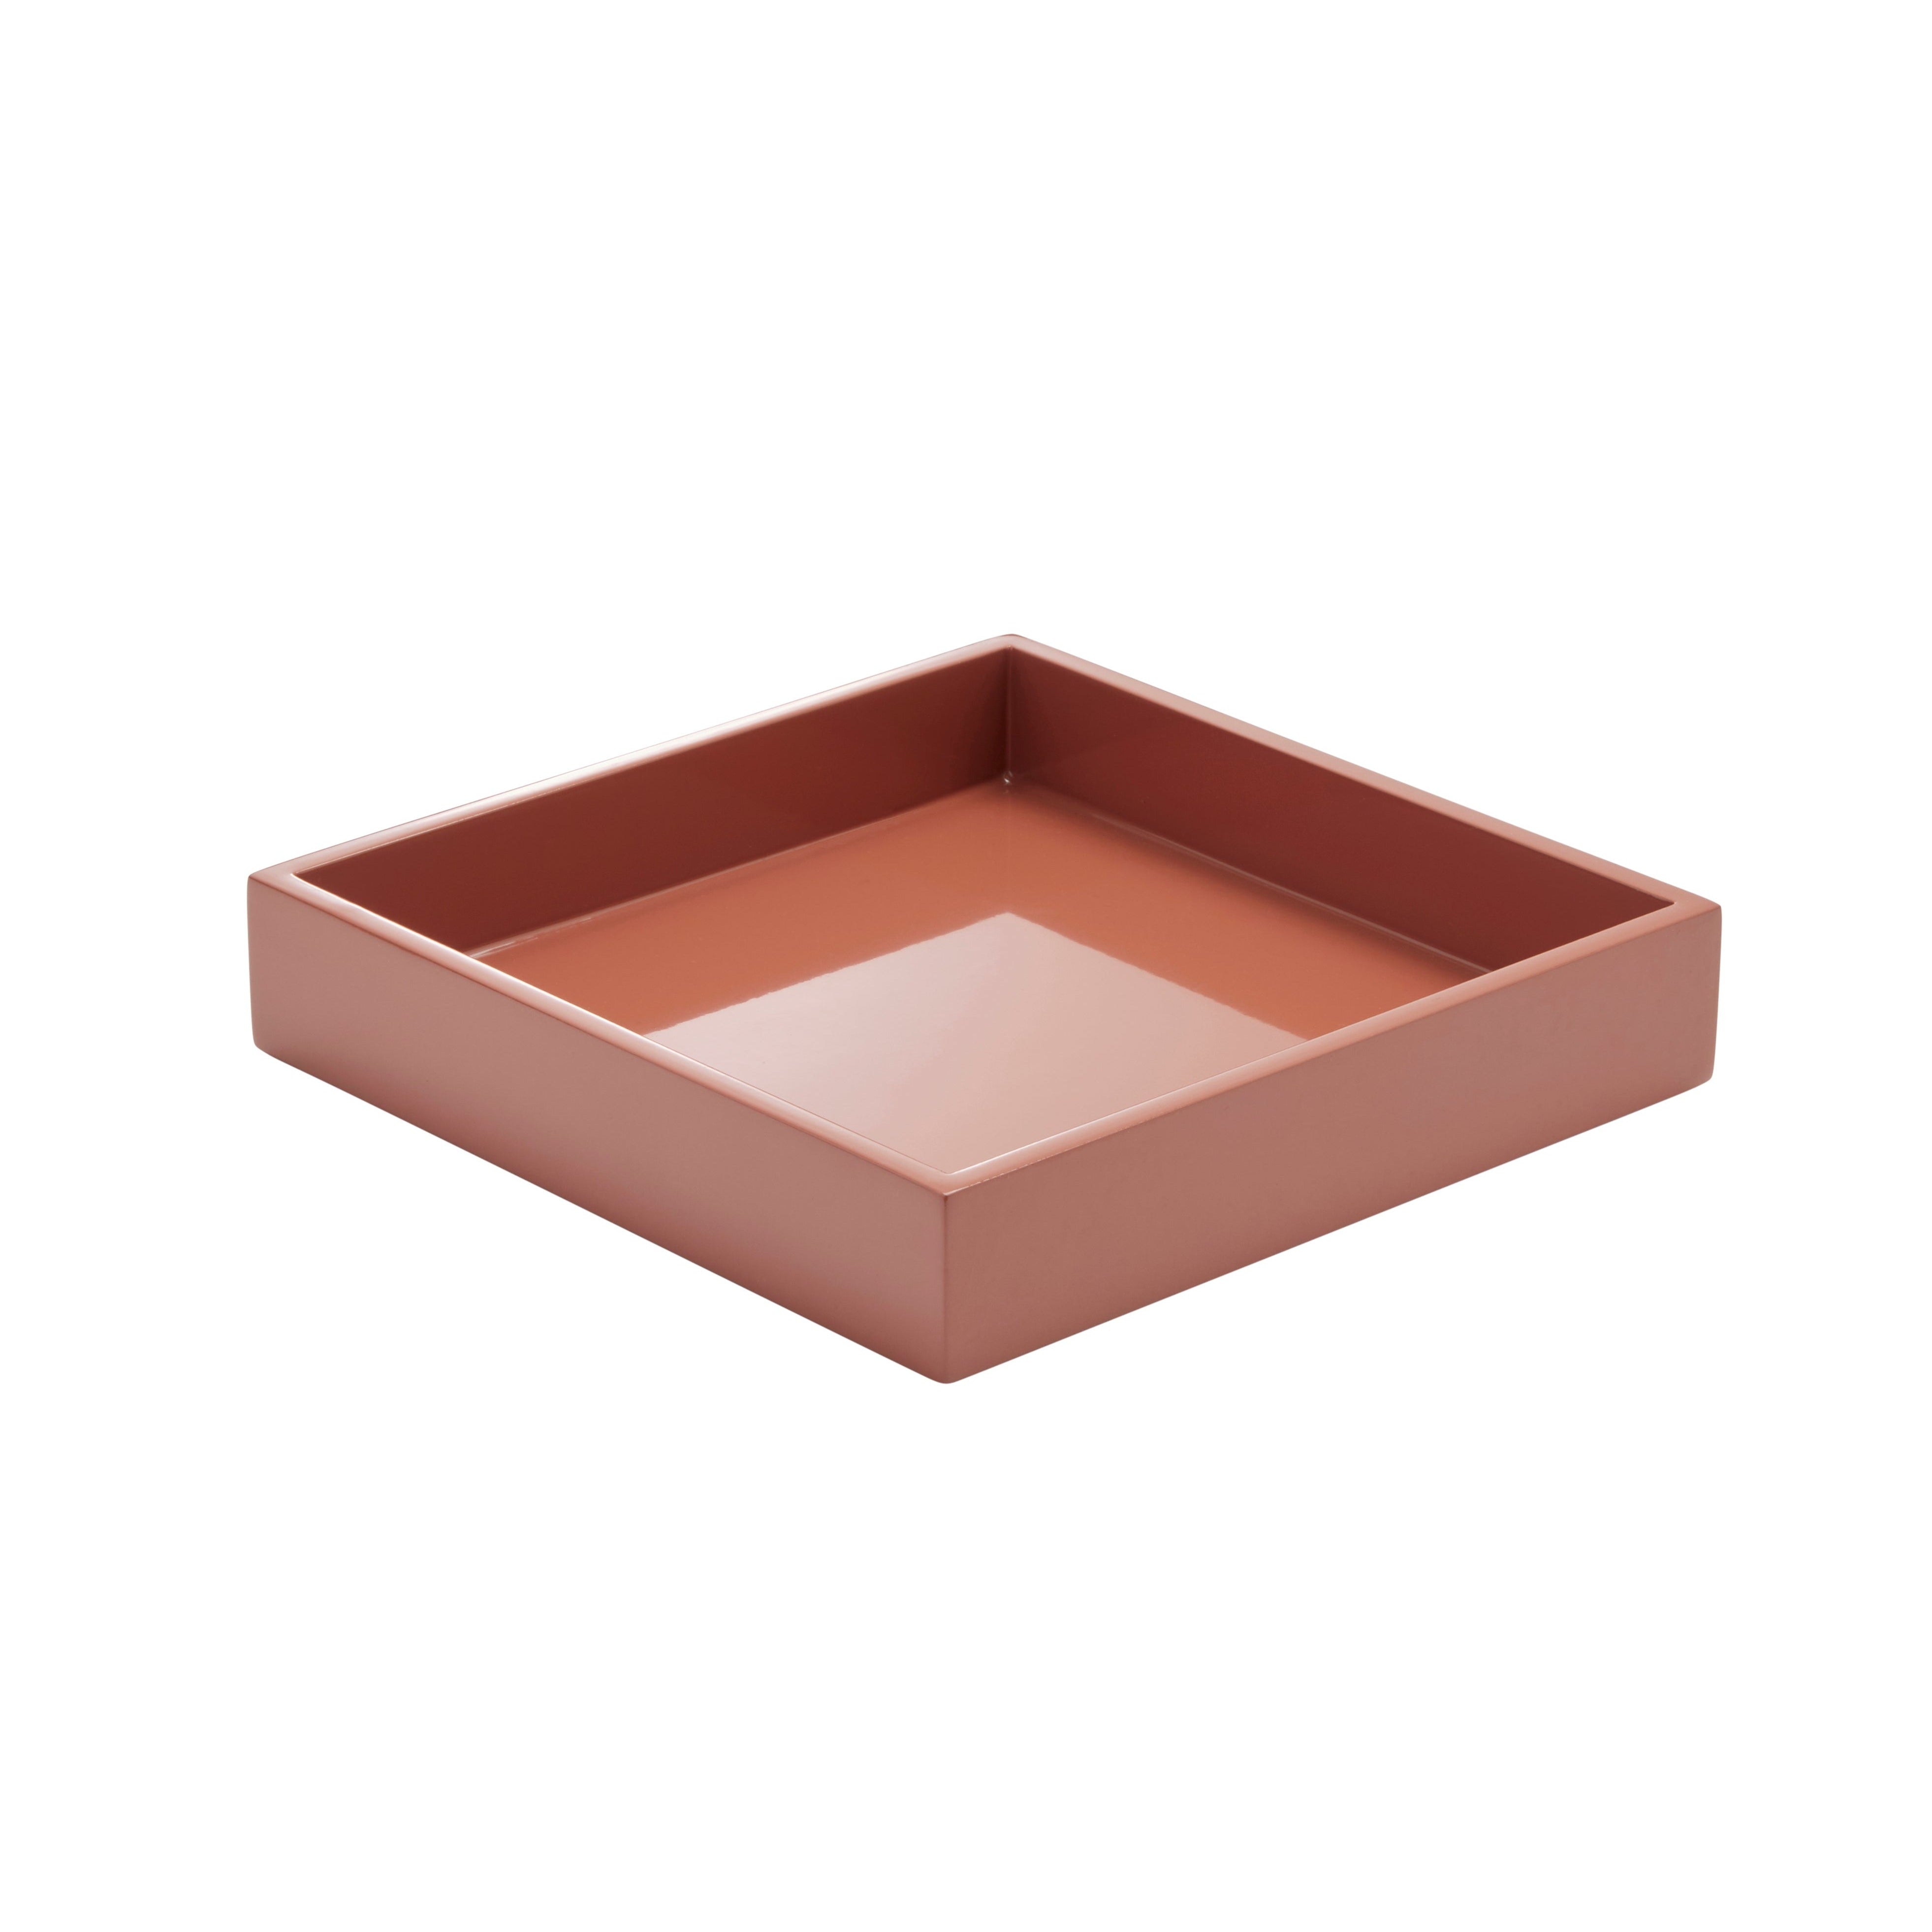 Lux Tray Small - Copper